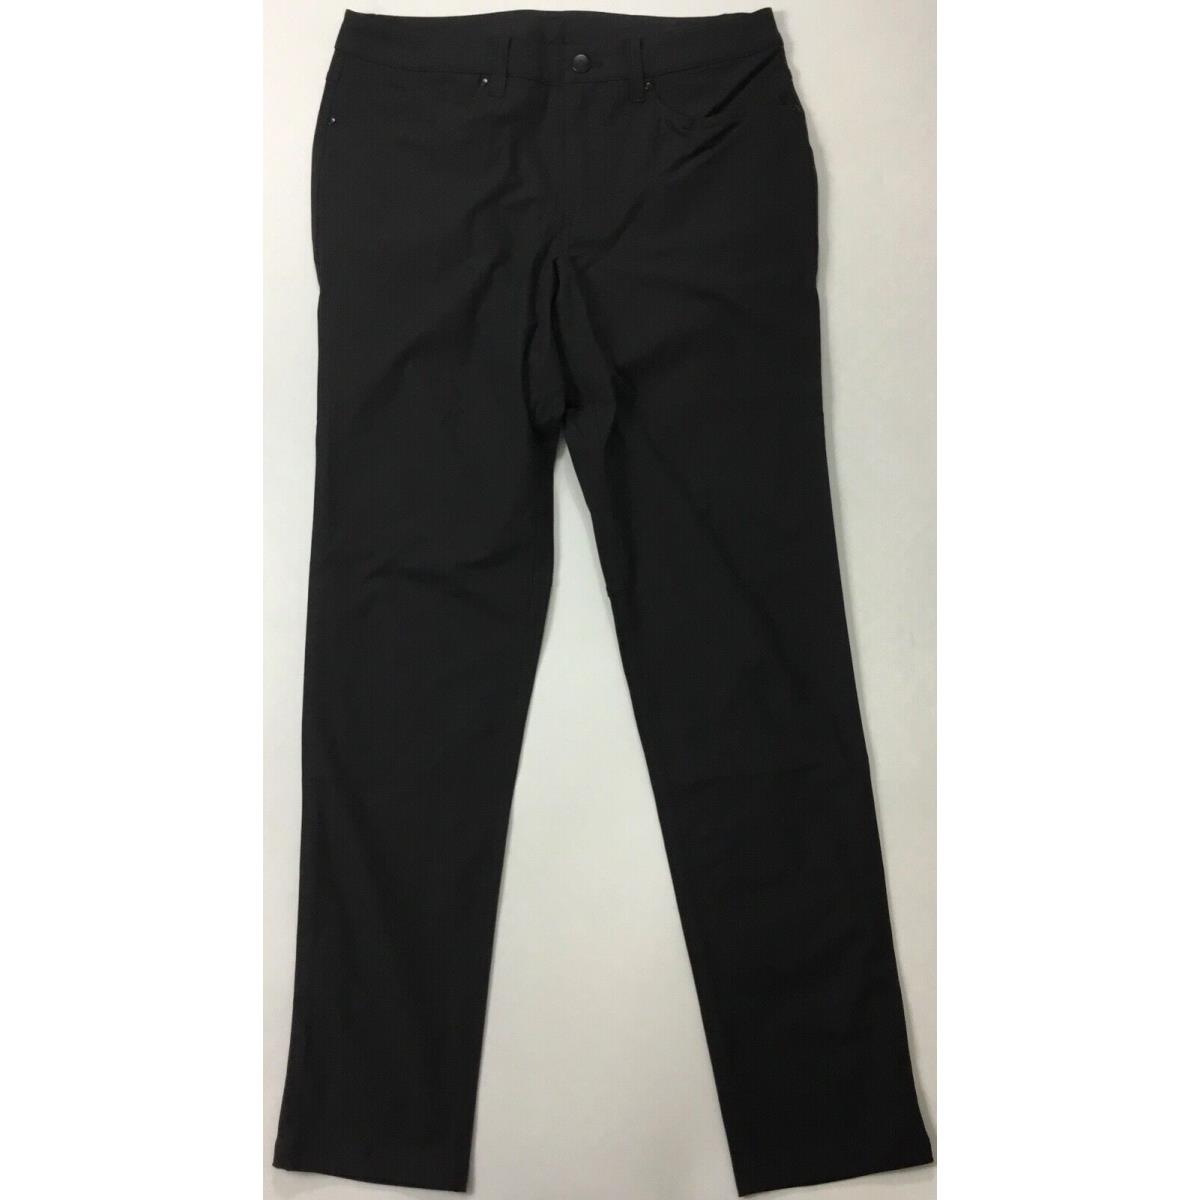 Lululemon Men s Abc Pant Slim 34 L LM5971S Black Size 32